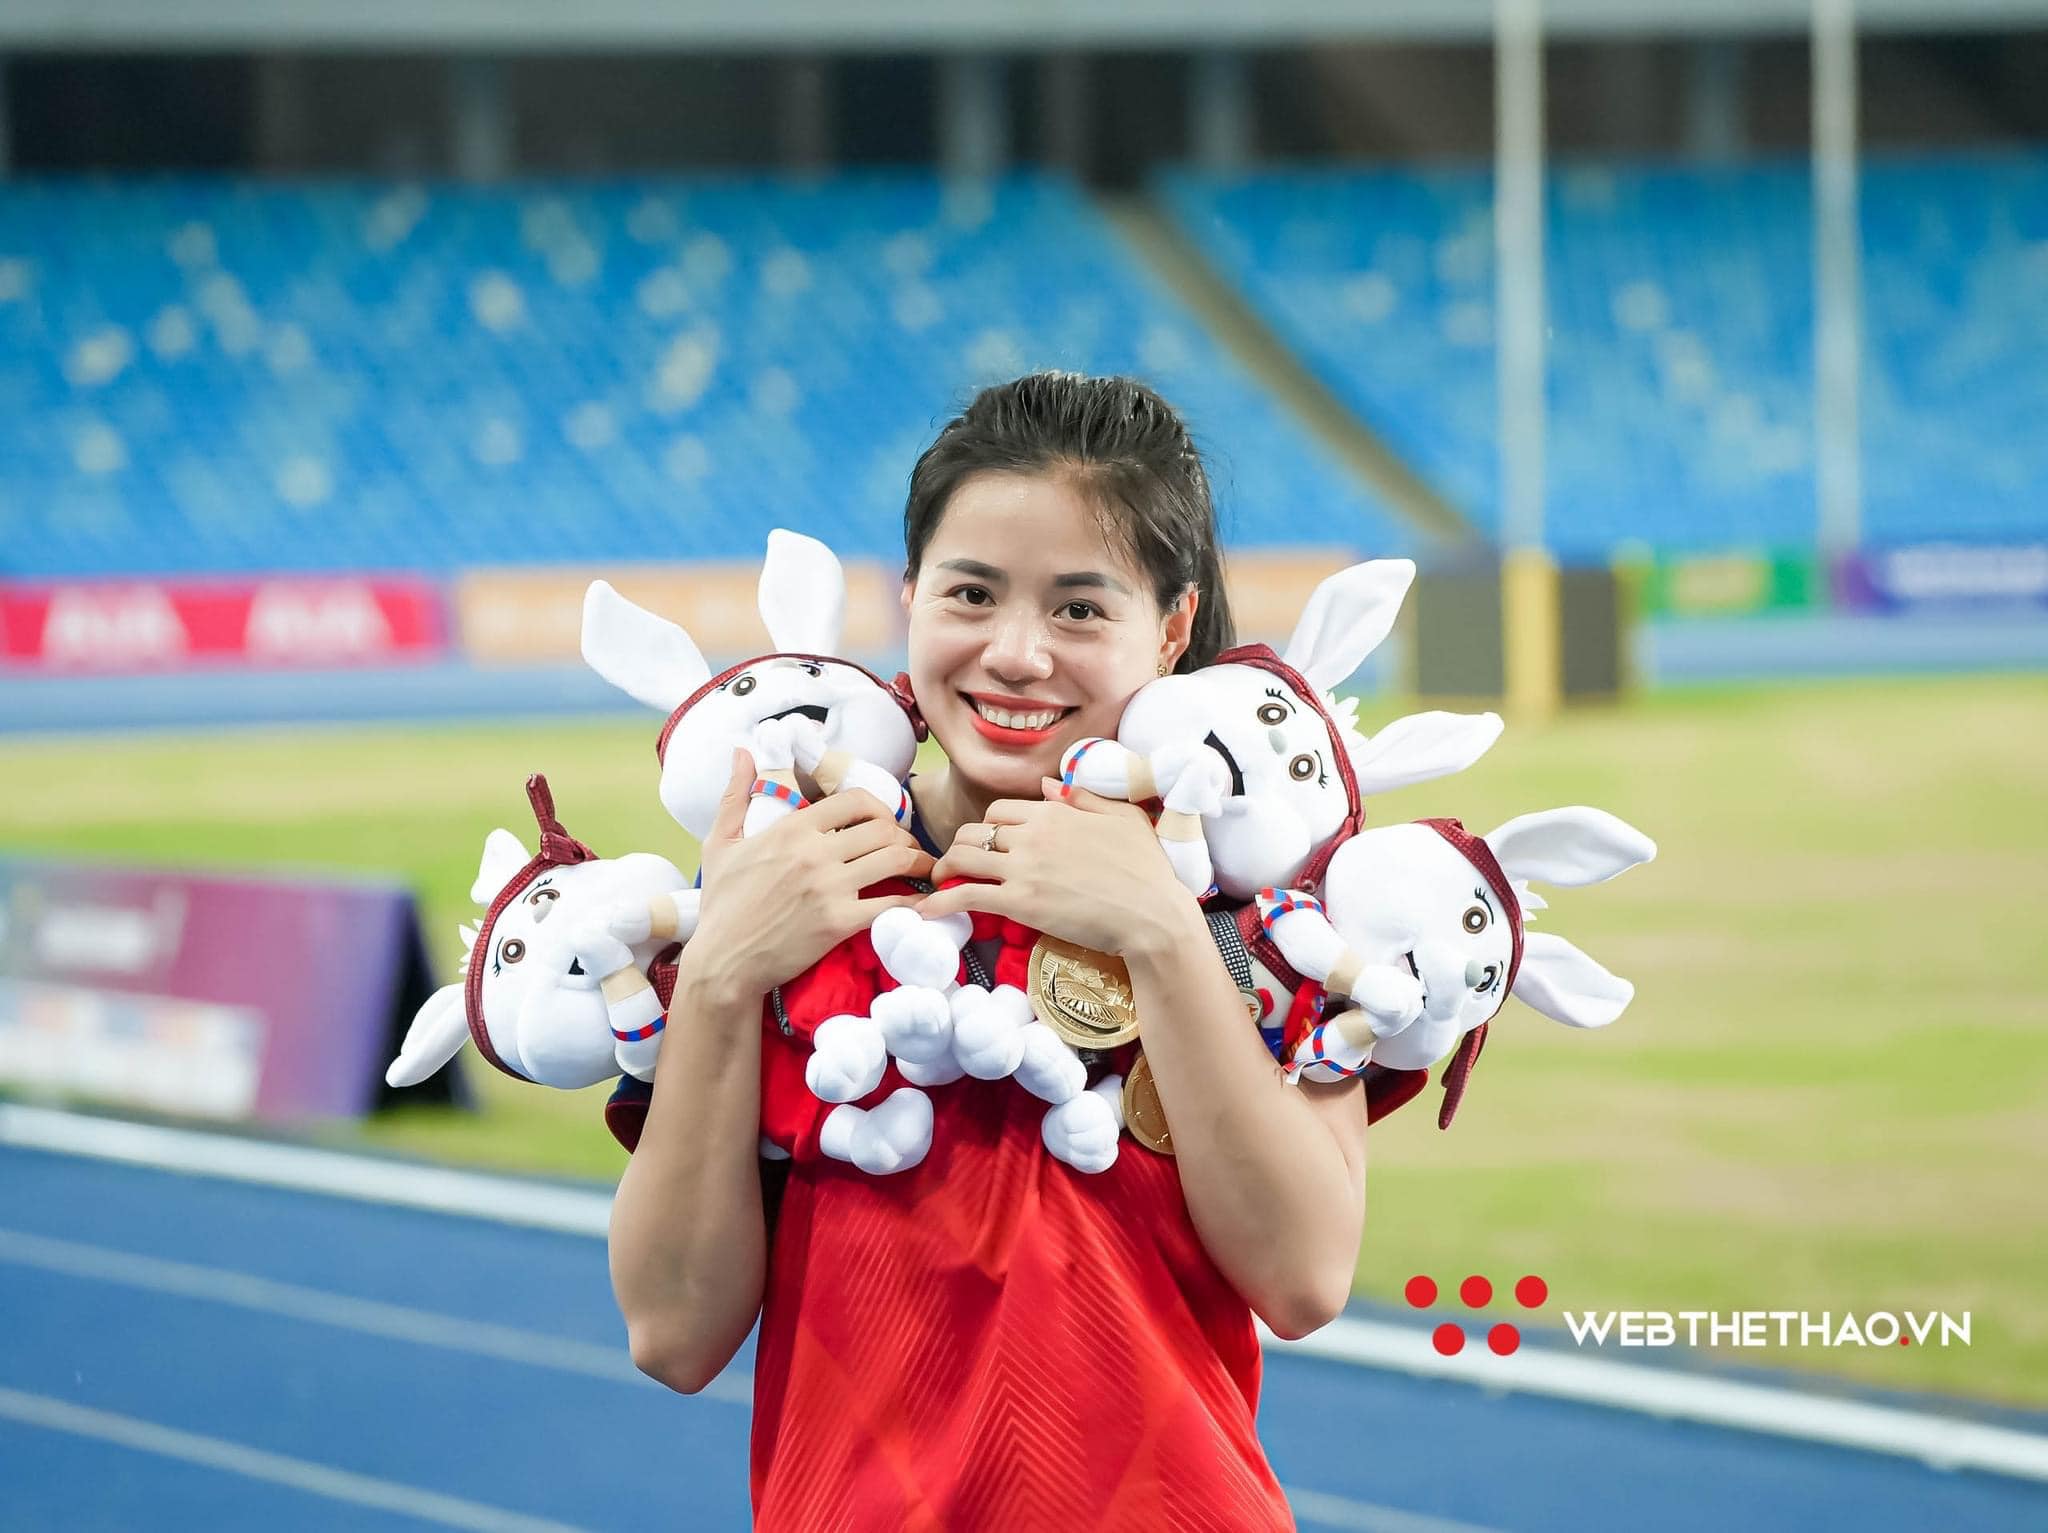 “Bà mẹ thép điền kinh” Nguyễn Thị Huyền, tuổi 30 và những kỷ lục SEA Games đi vào lịch sử